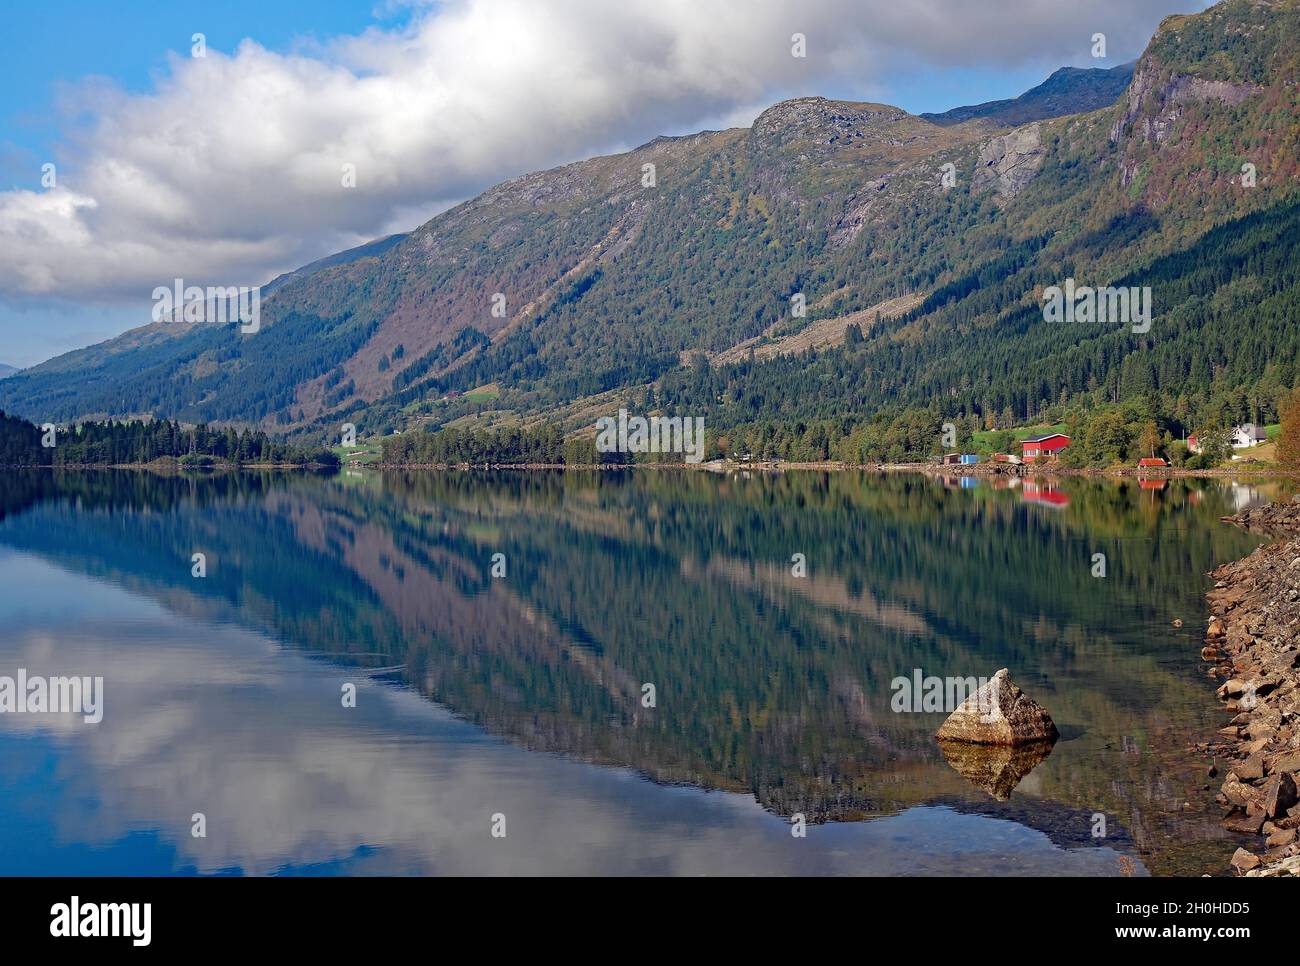 Foresta e case riflesse in un lago, idillio, gallartal, Scandinavia, norvegia Foto Stock